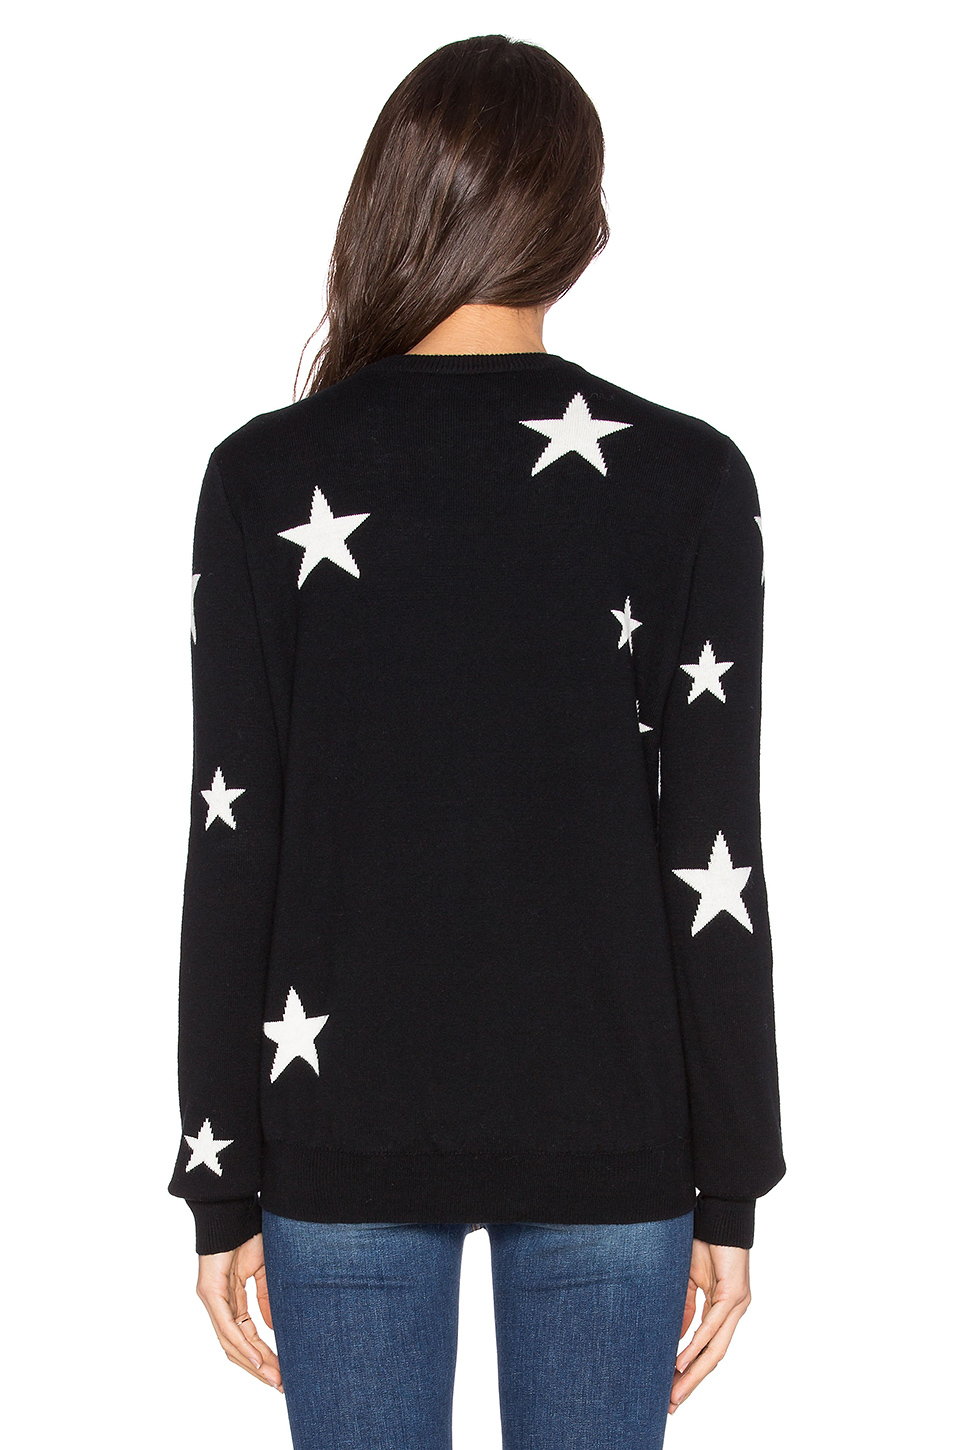 Lyst - Michael Stars Star Intarsia Sweater in Black